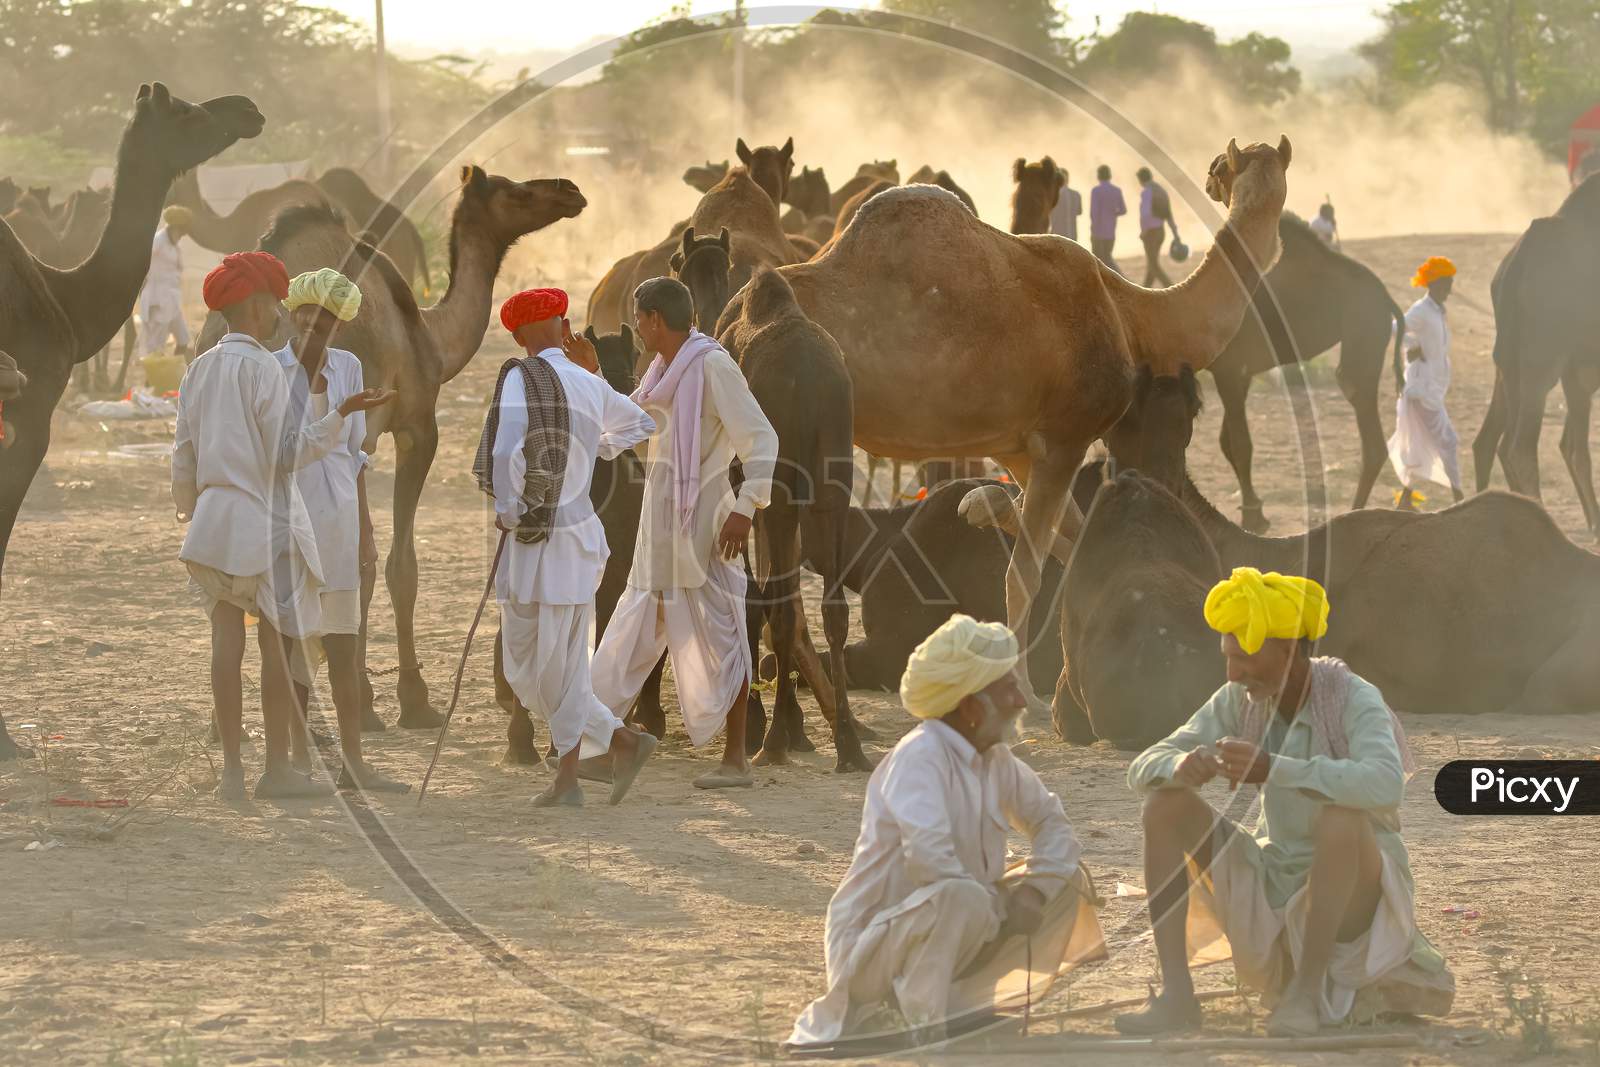 Camel traders negotiating trade of their livestock camels at Pushkar camel fair